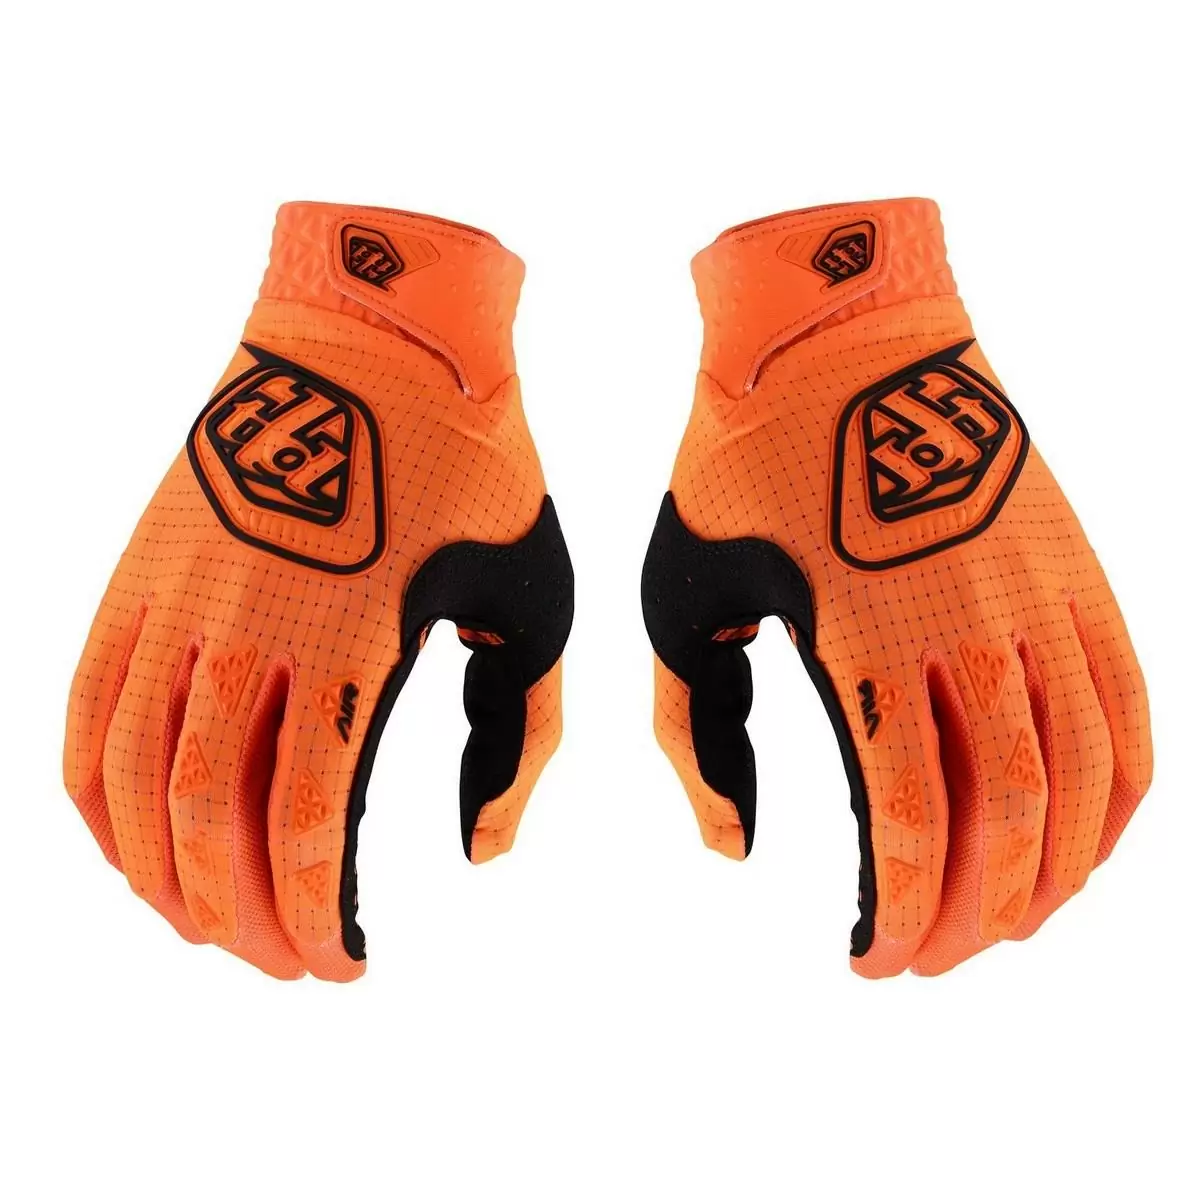 MTB Gloves Air Glove Orange Fluo Size S - image